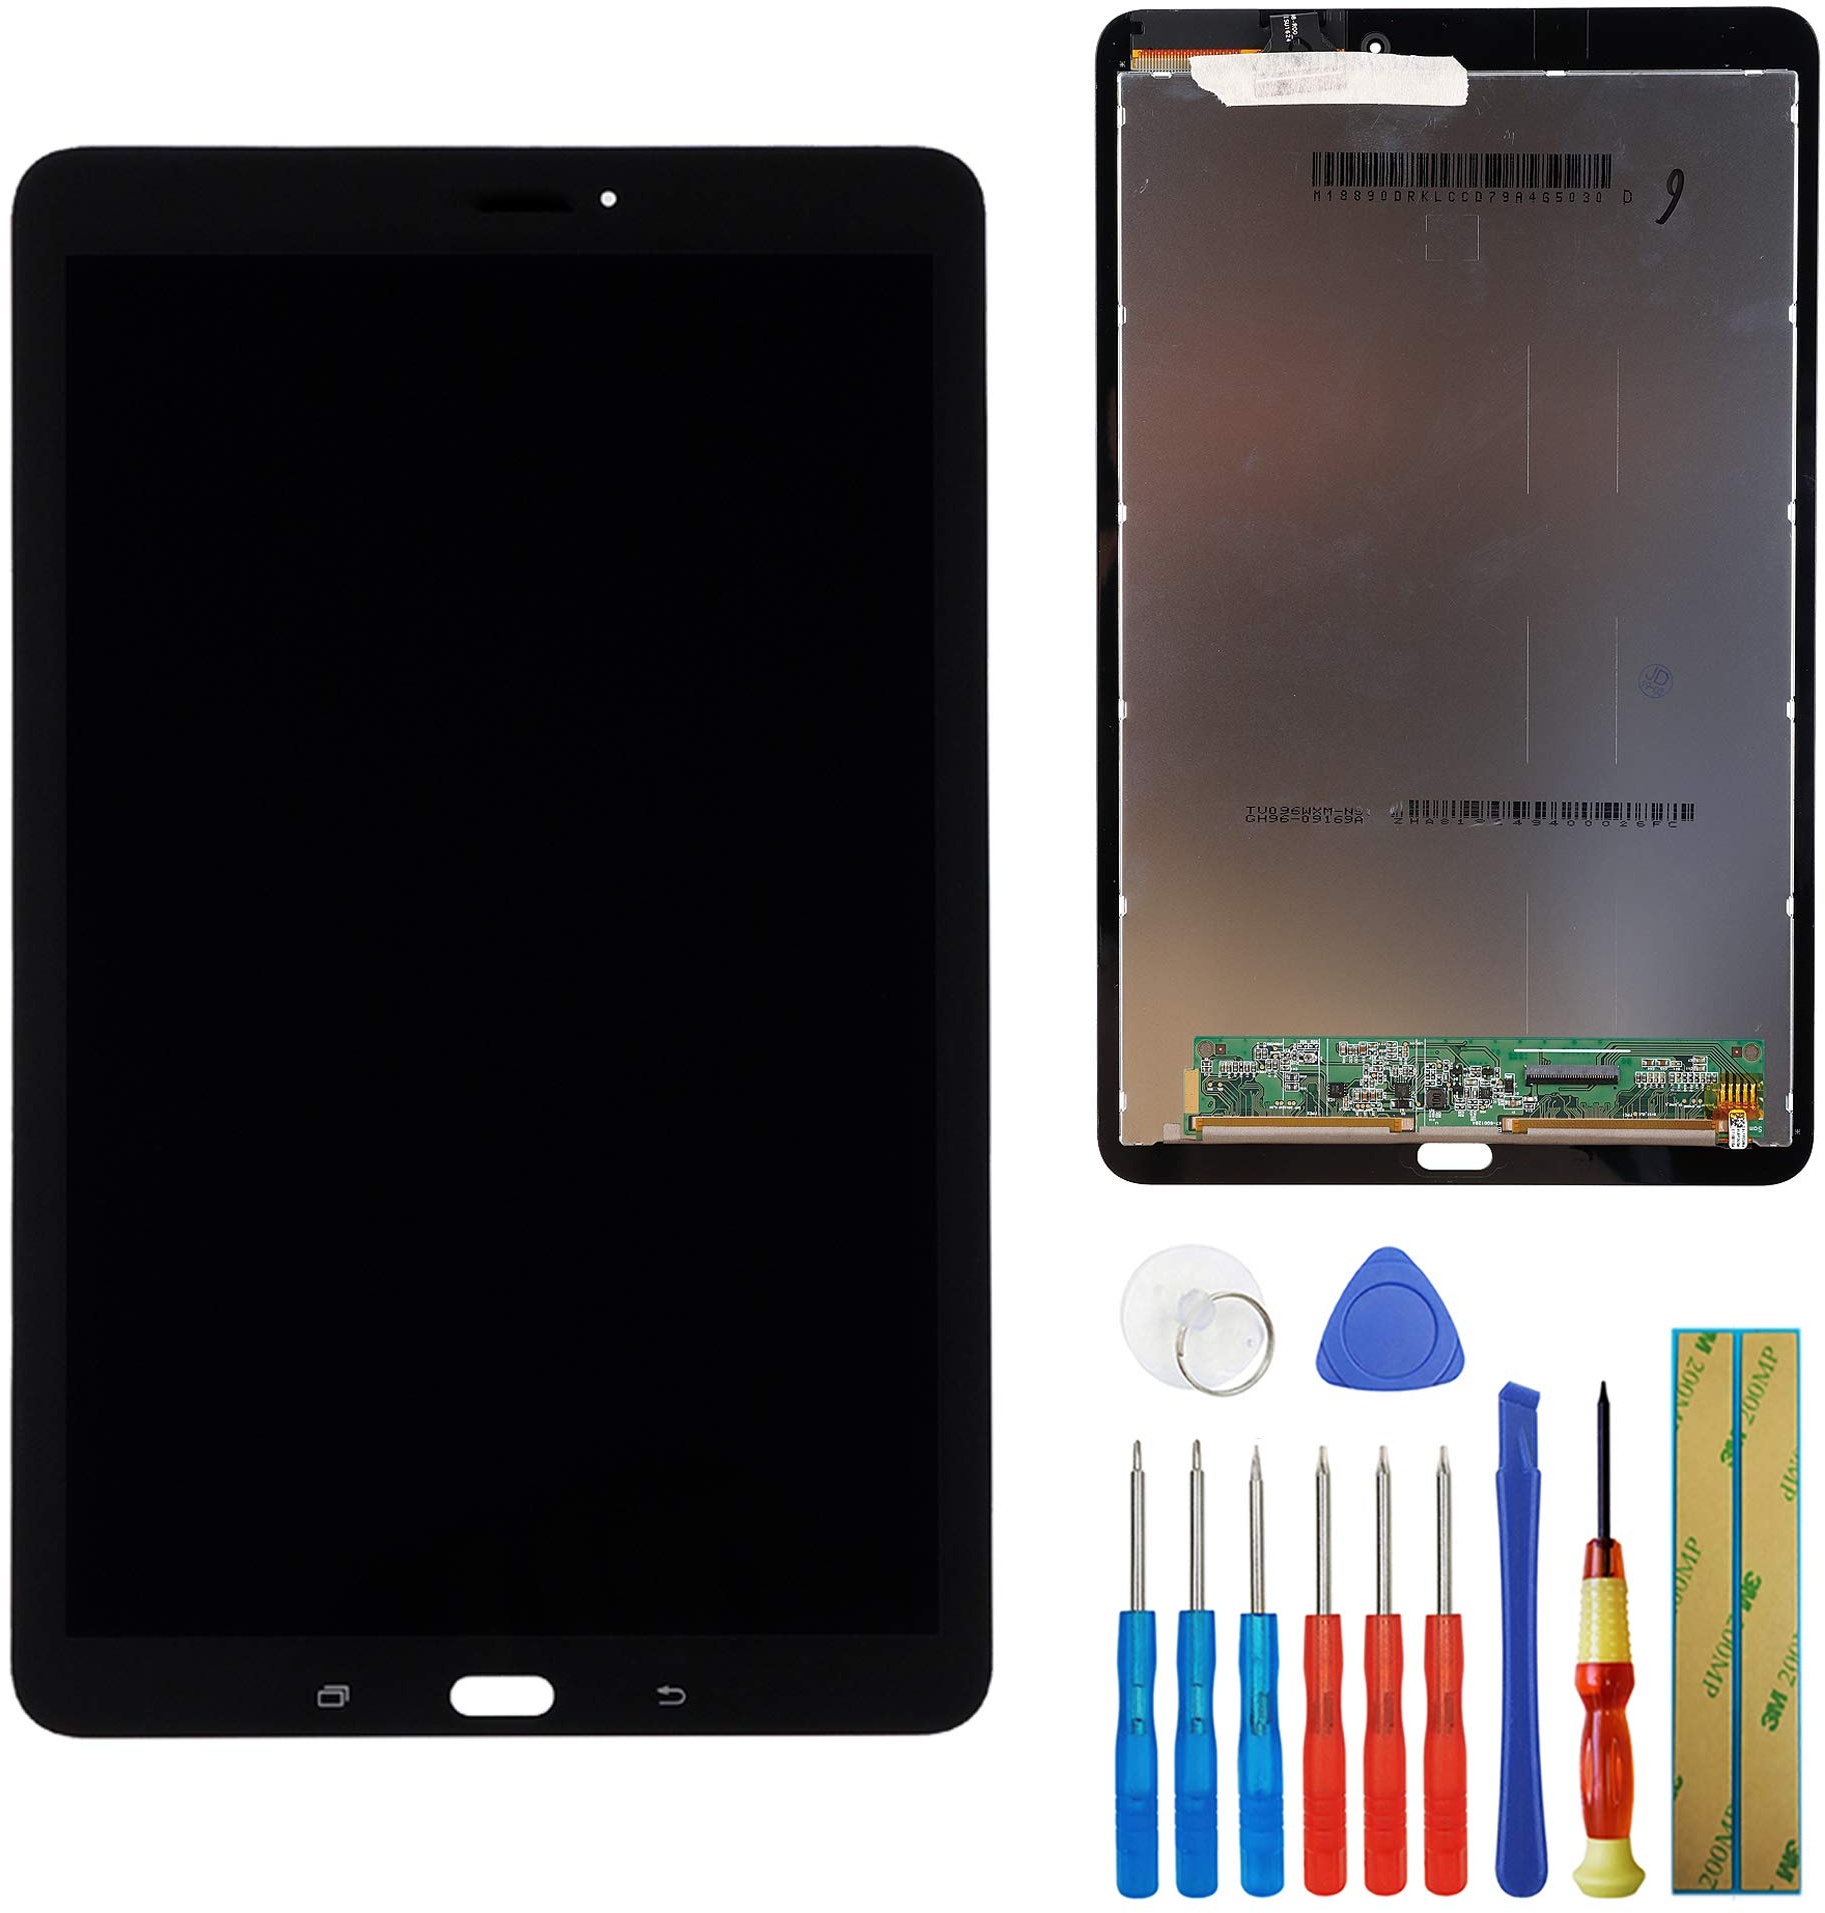 LCD Touch Screen Display Assembly Digitizer kompatibel mit Samsung Galaxy Tab E 9.6 SM-T560 T561 T567 LCD Display + Werkzeug